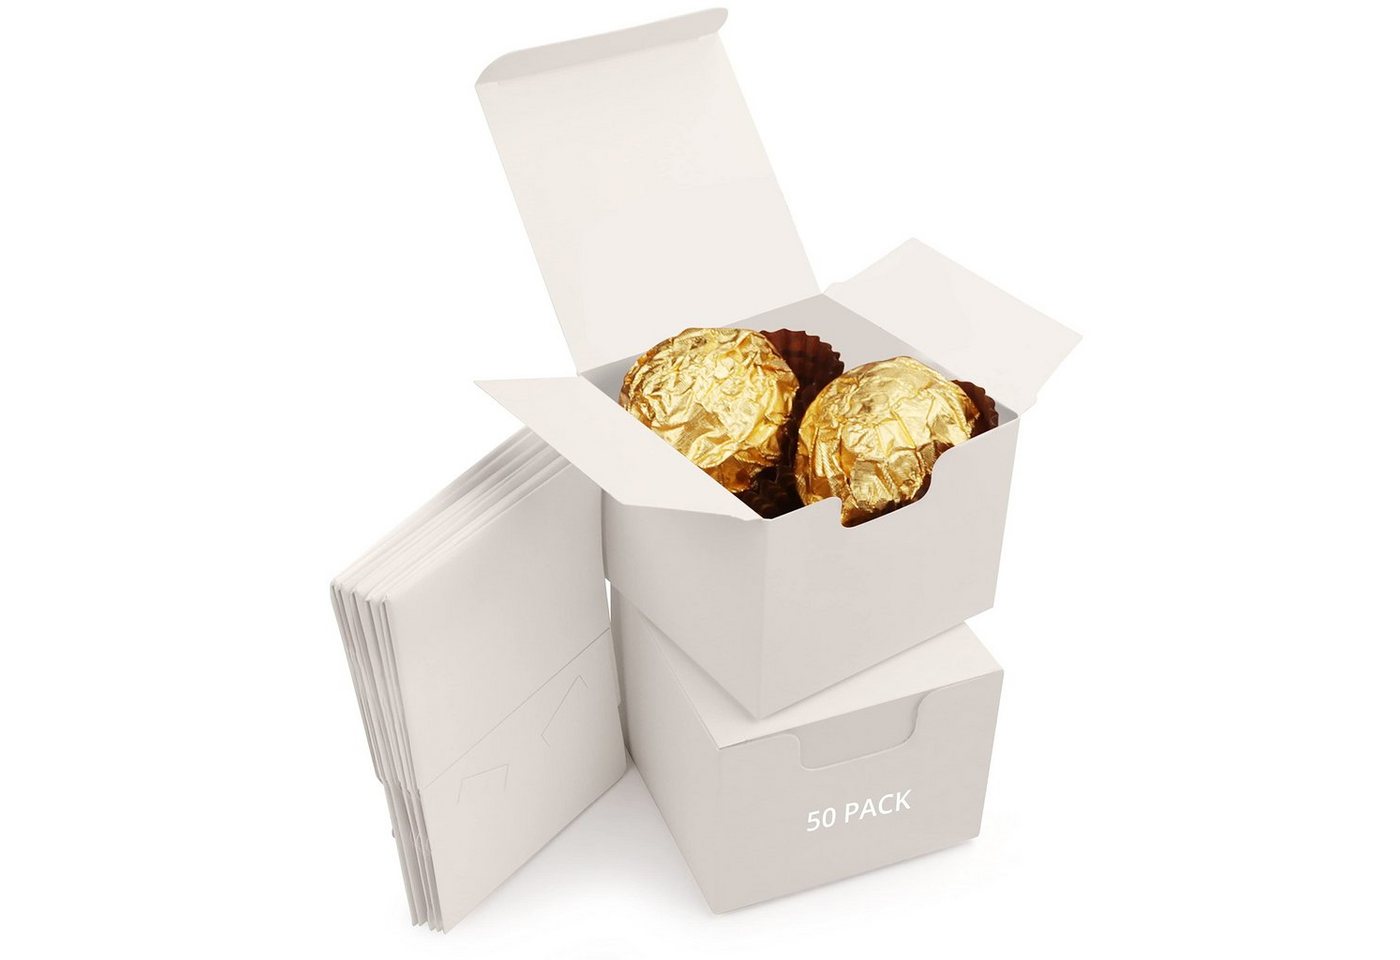 Kurtzy Geschenkbox Weiße Geschenkbox mit Deckel (50er Pack) - 5x5x5 cm, White Gift Box with Lid (50 Pack) - 5x5x5 cm von Kurtzy